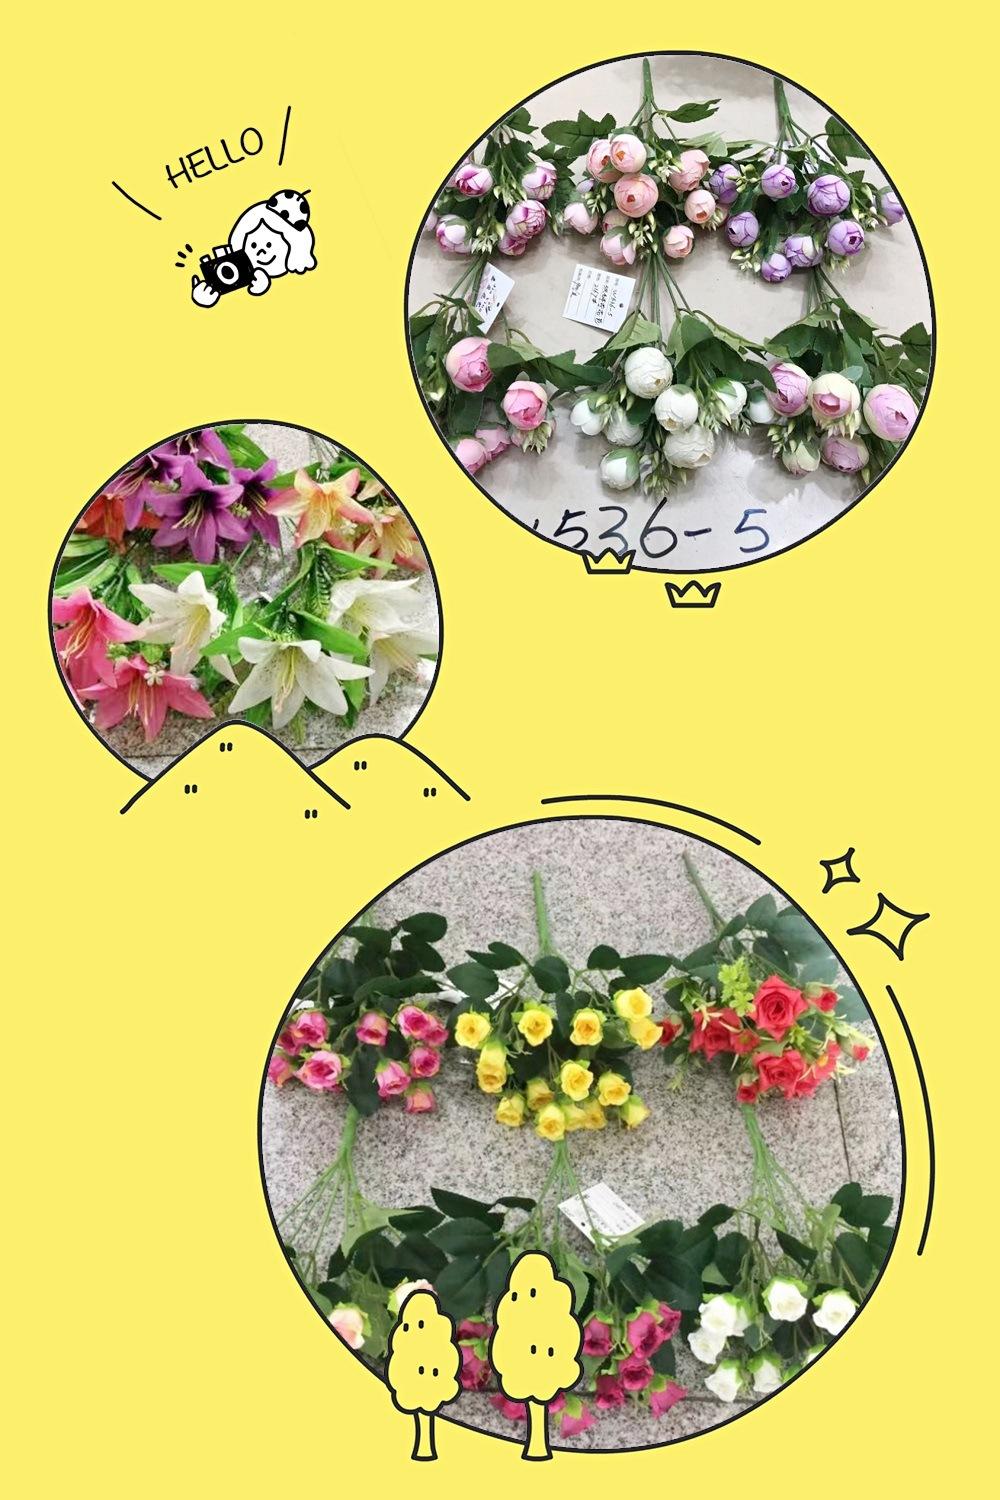 Good Sale Wedding Rose Bundle Artificial Flower Mini Bouquet